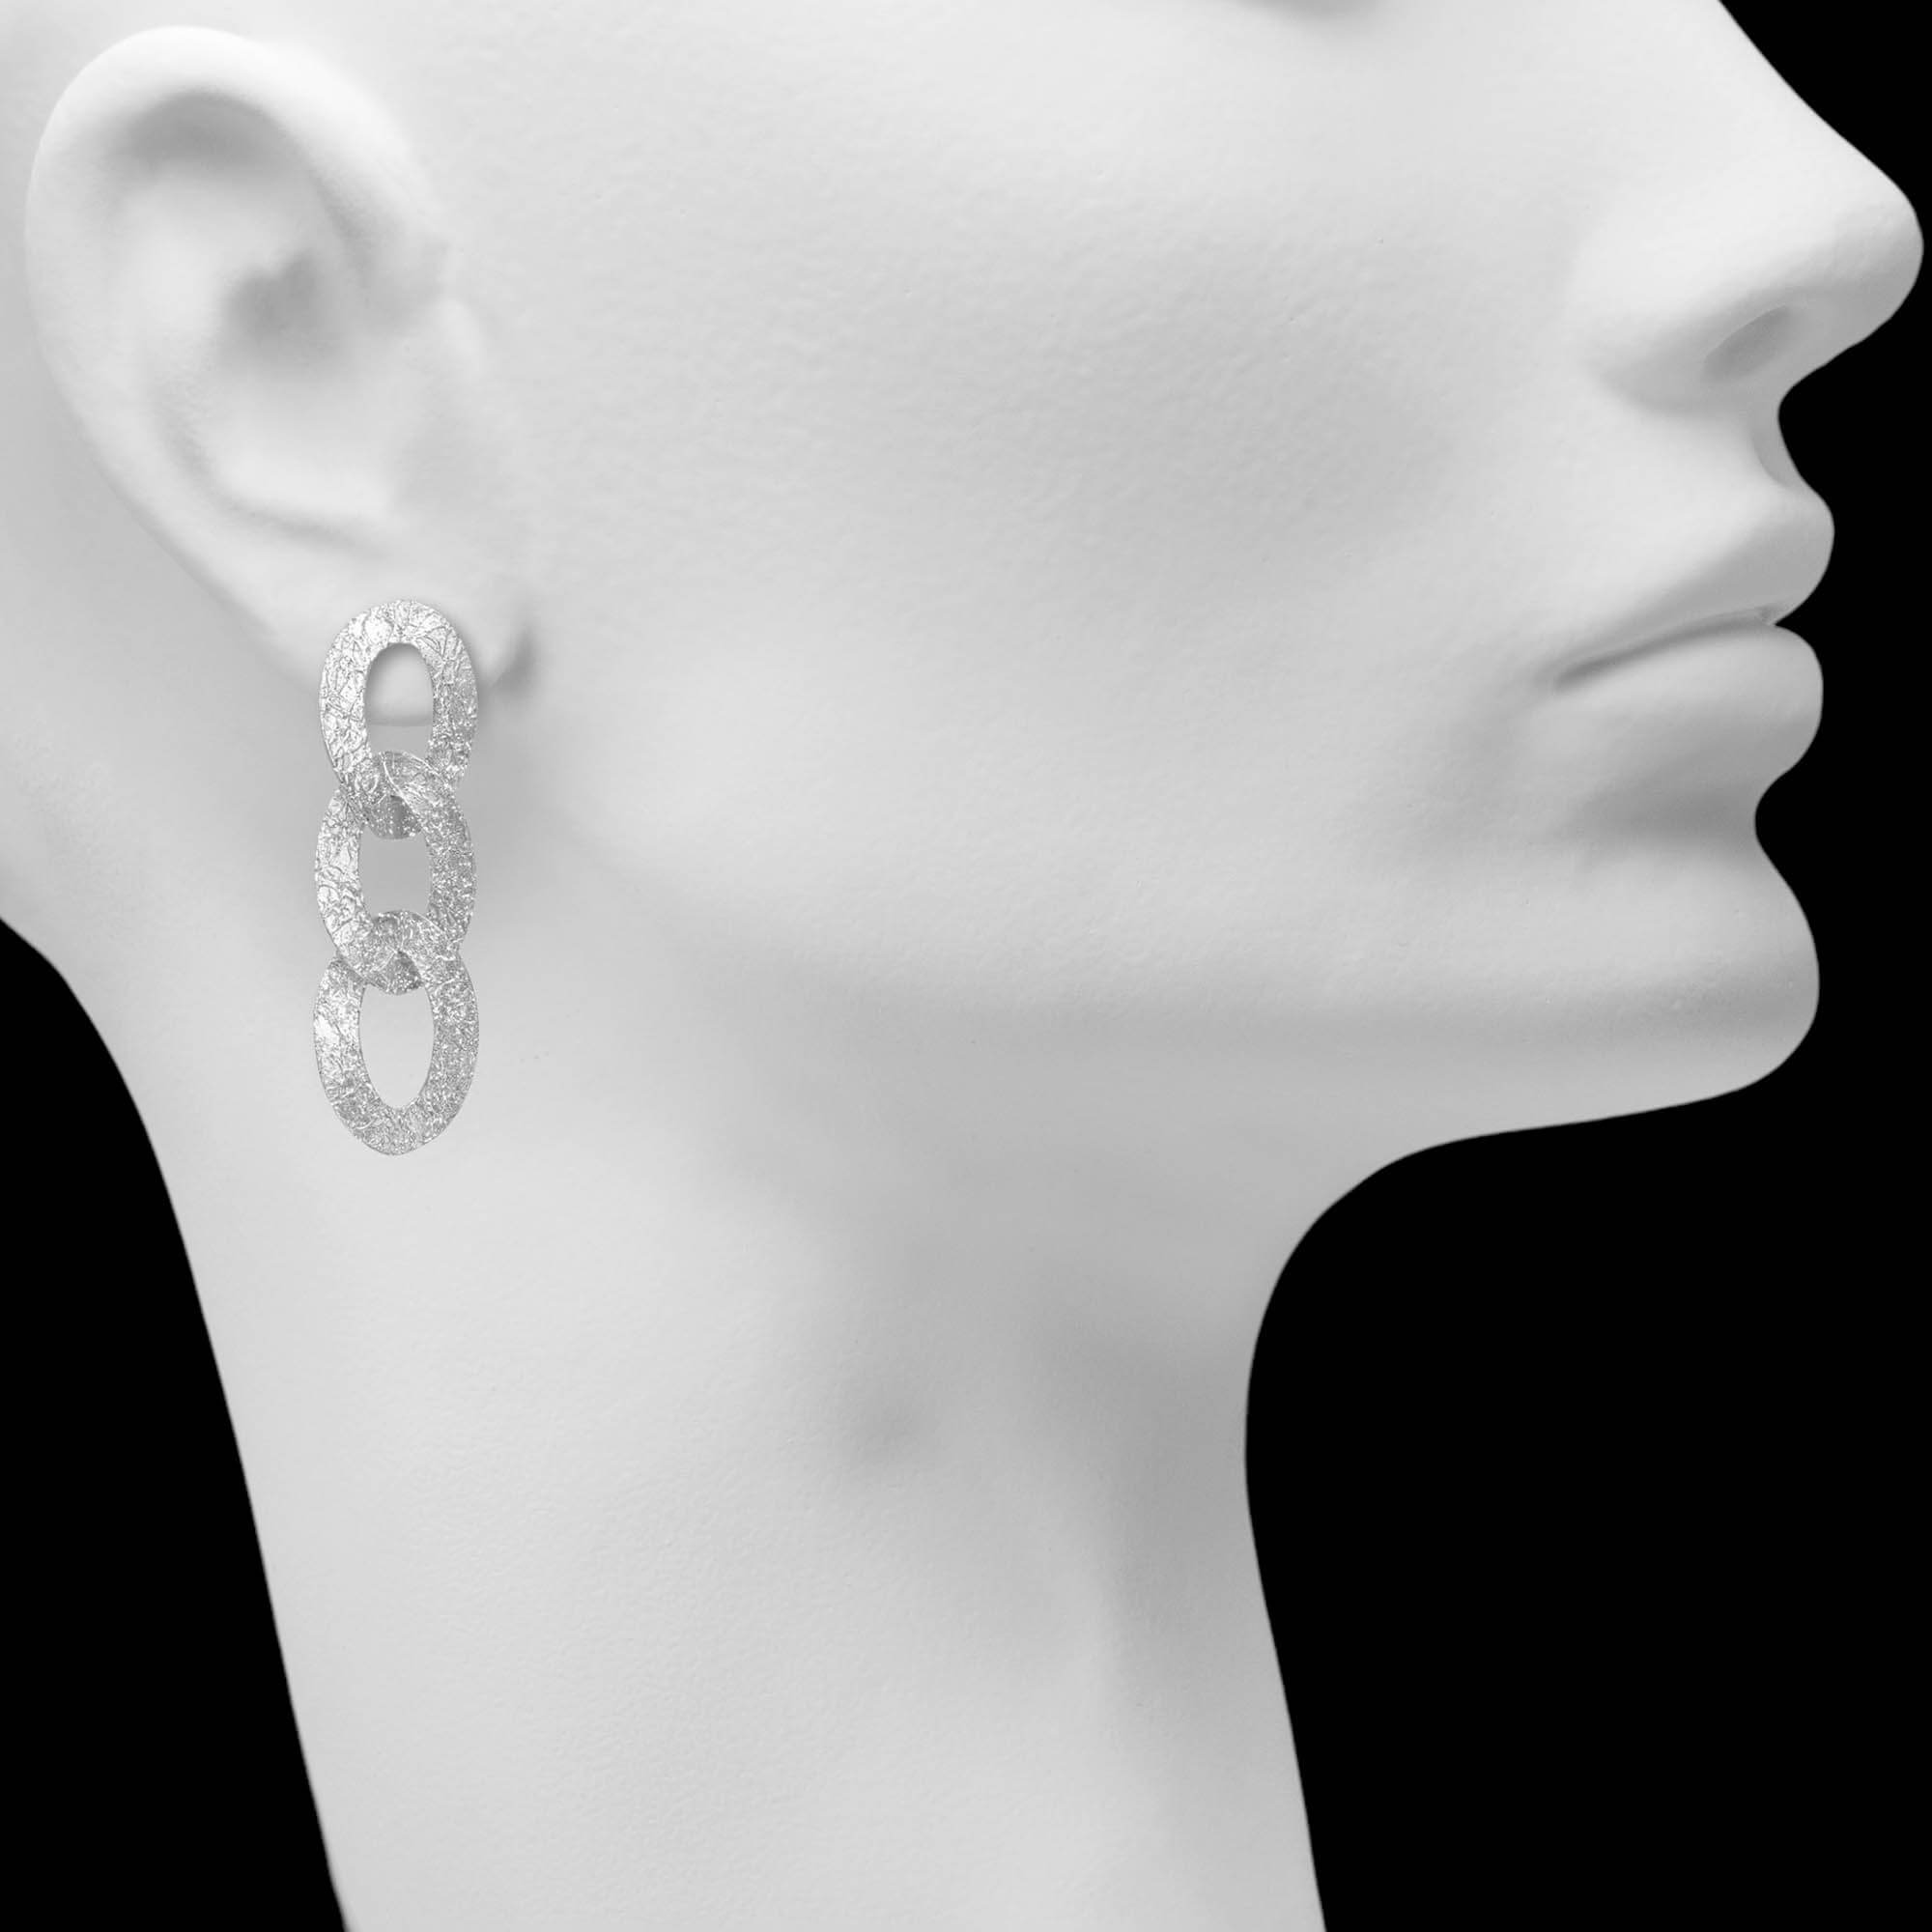 Long link earrings in silver